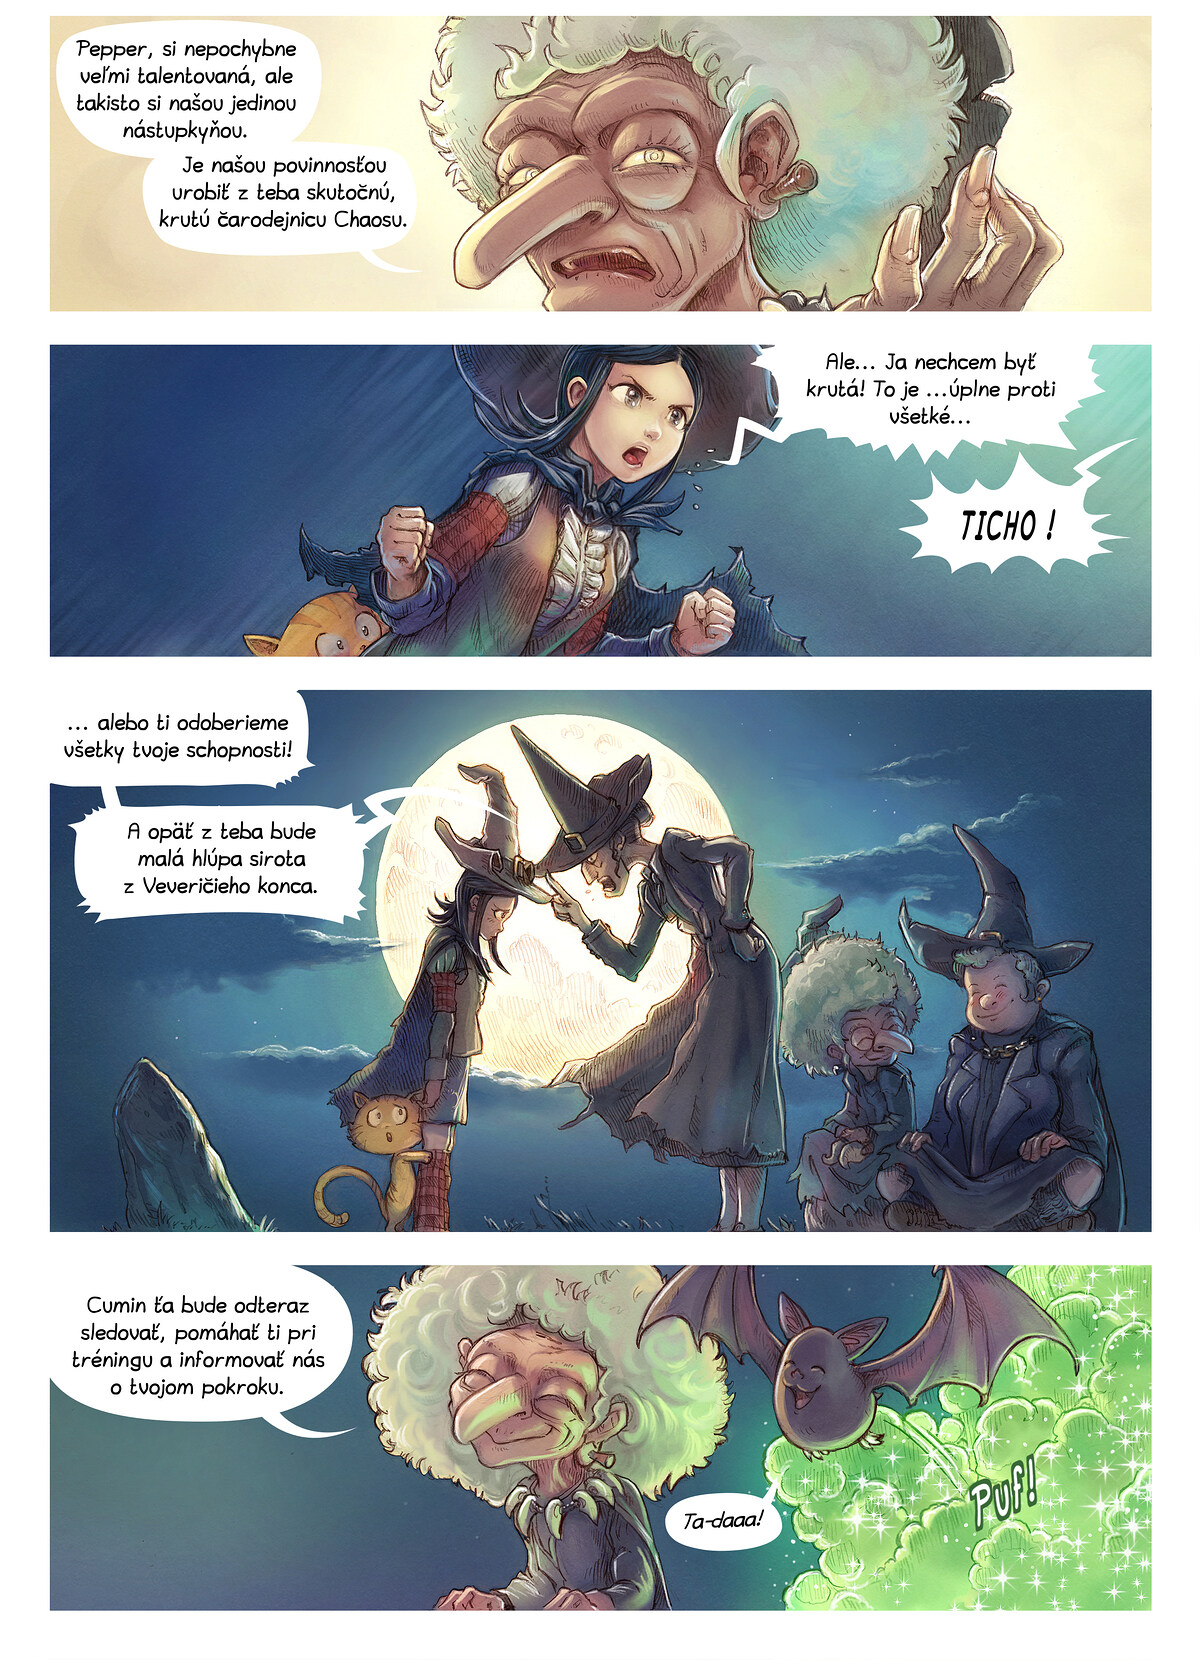 Epizóda 11: Čarodejnice Chaosu, Page 2